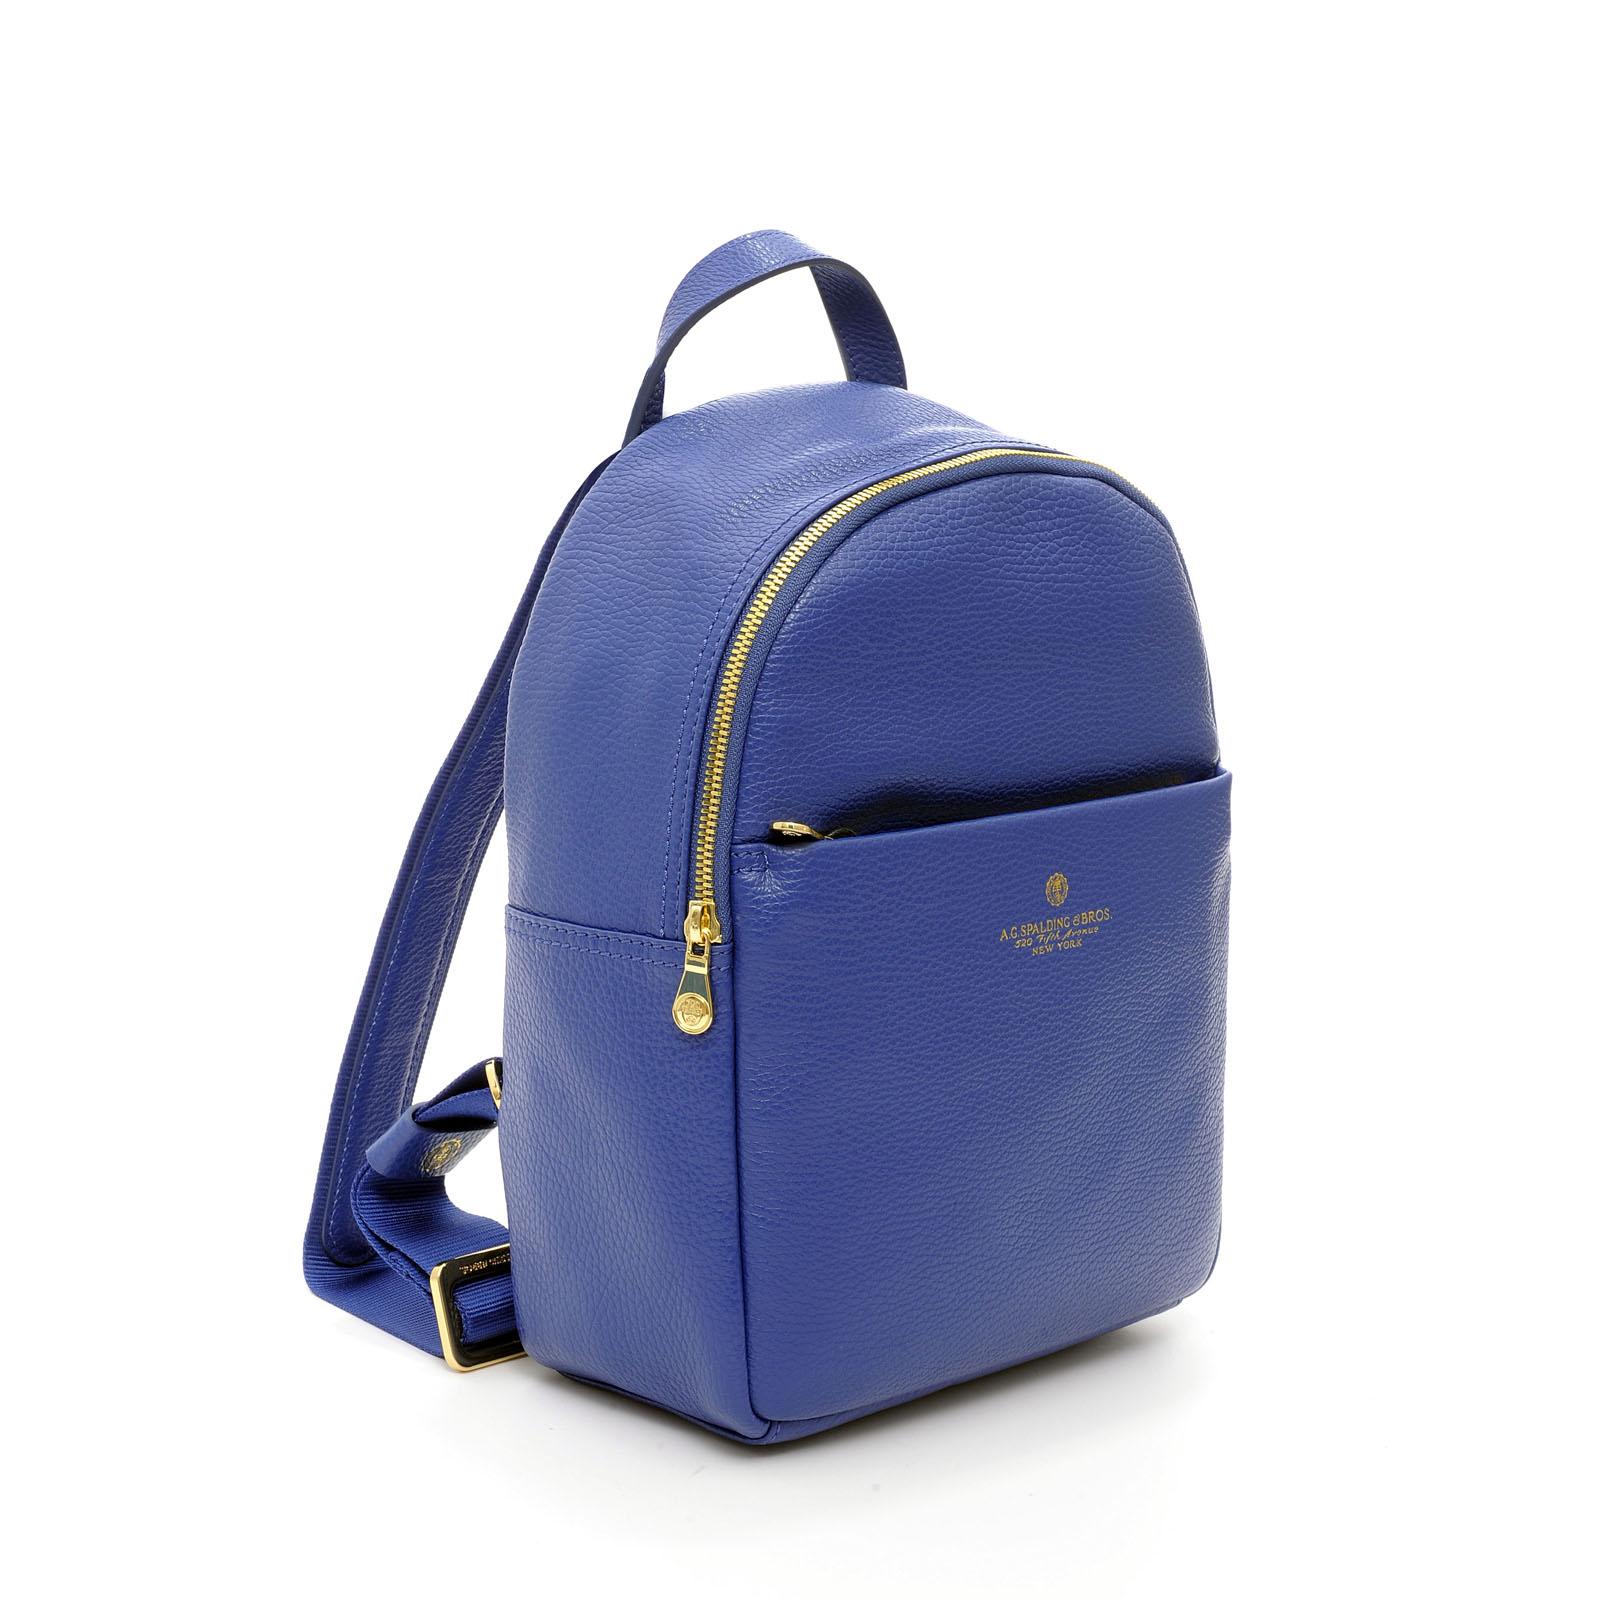 Small Woman Backpack Tiffany BLUE ROYAL 